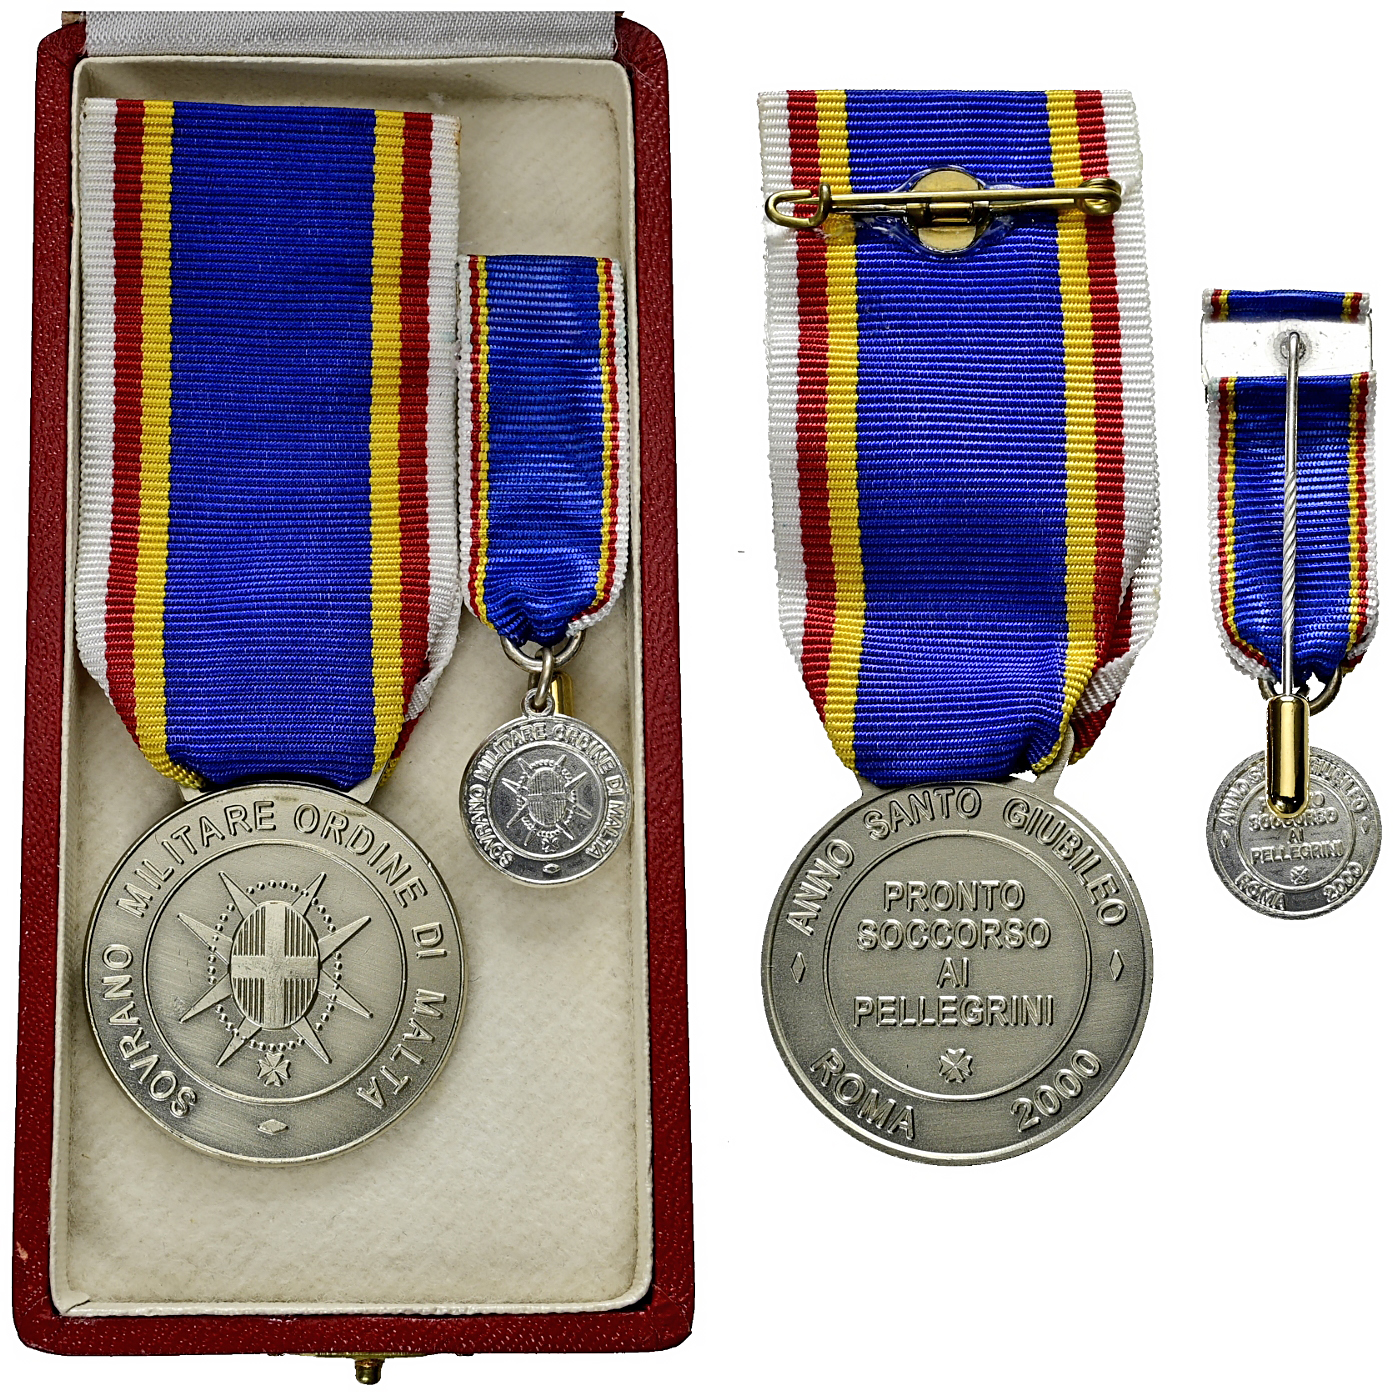 Medaille, versilbert o.J. Verdienstmedaille des ADAC, gepr. 1903 - für  sportliche Organisation AU, mattierte Patina